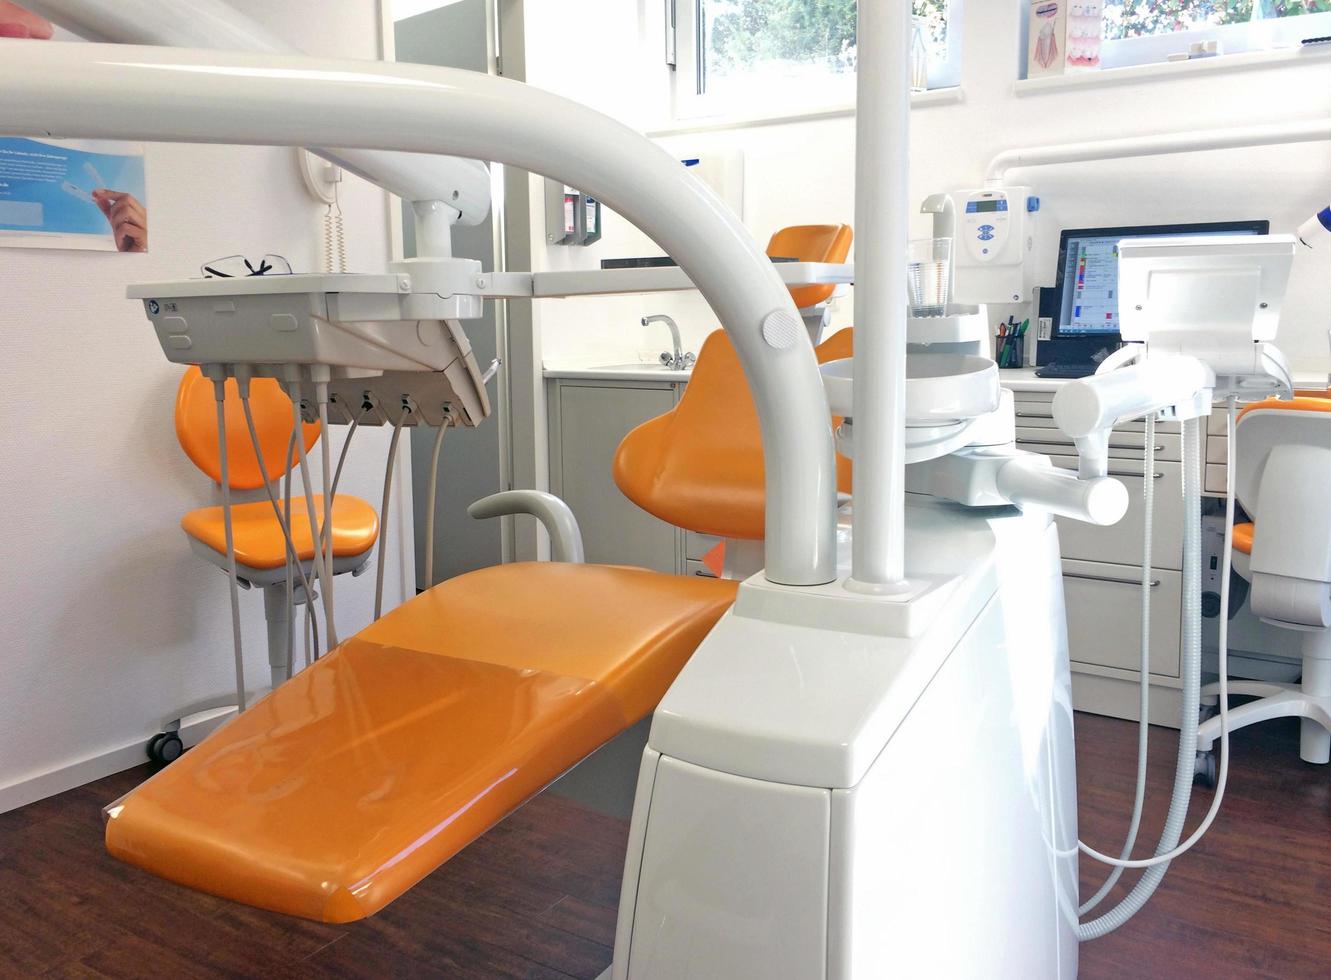 colônia, alemanha, 2019 - um consultório de dentista bem iluminado com cadeira de dentista. foto